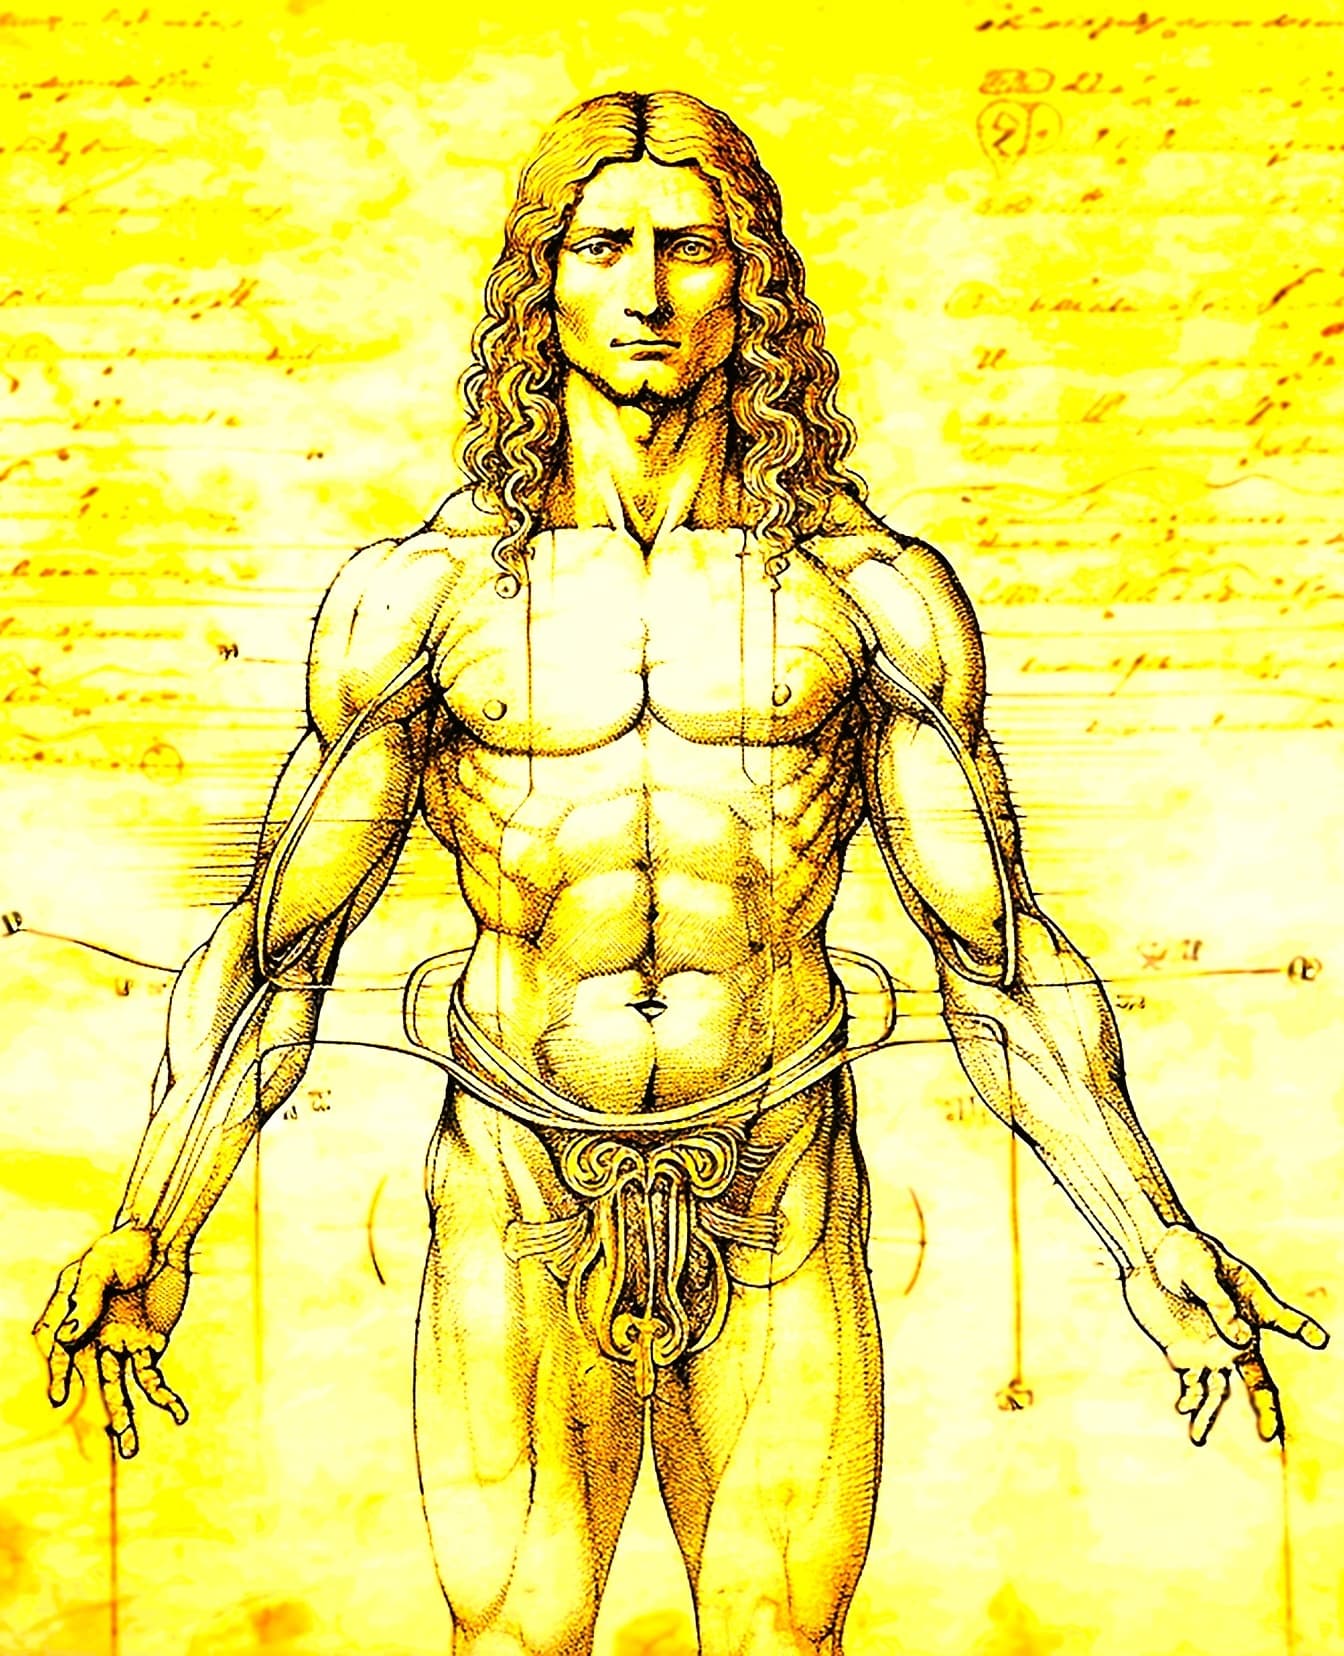 Piirustus lihaksikkaan miehen anatomiasta Leonardo da Vincin Vitruvian Manin tyyliin